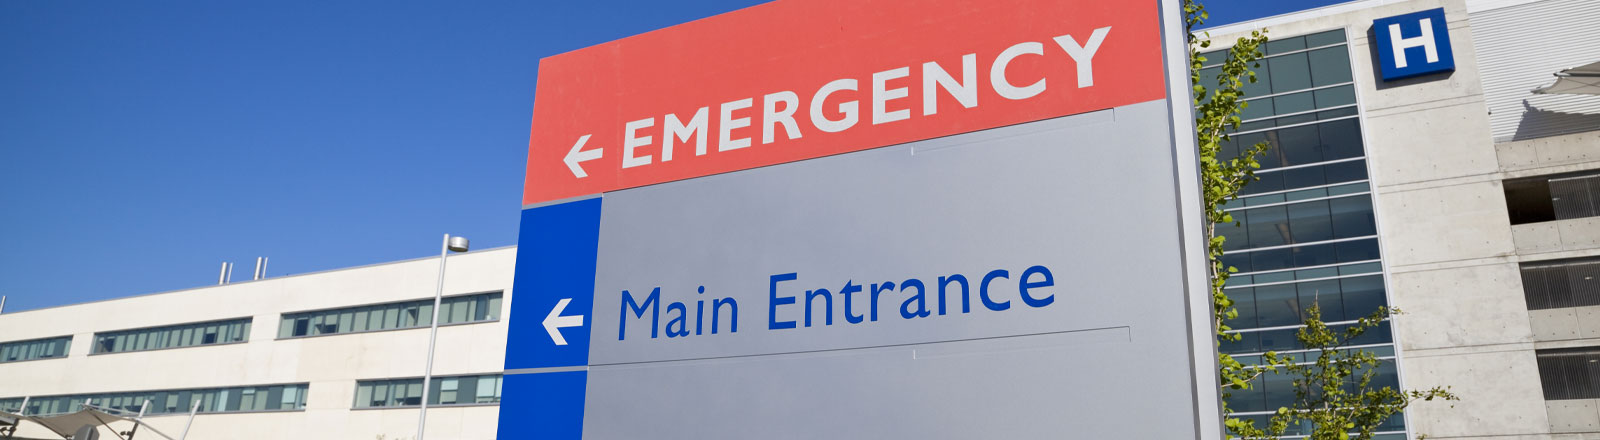 Photo of hospital emergency entrance sign